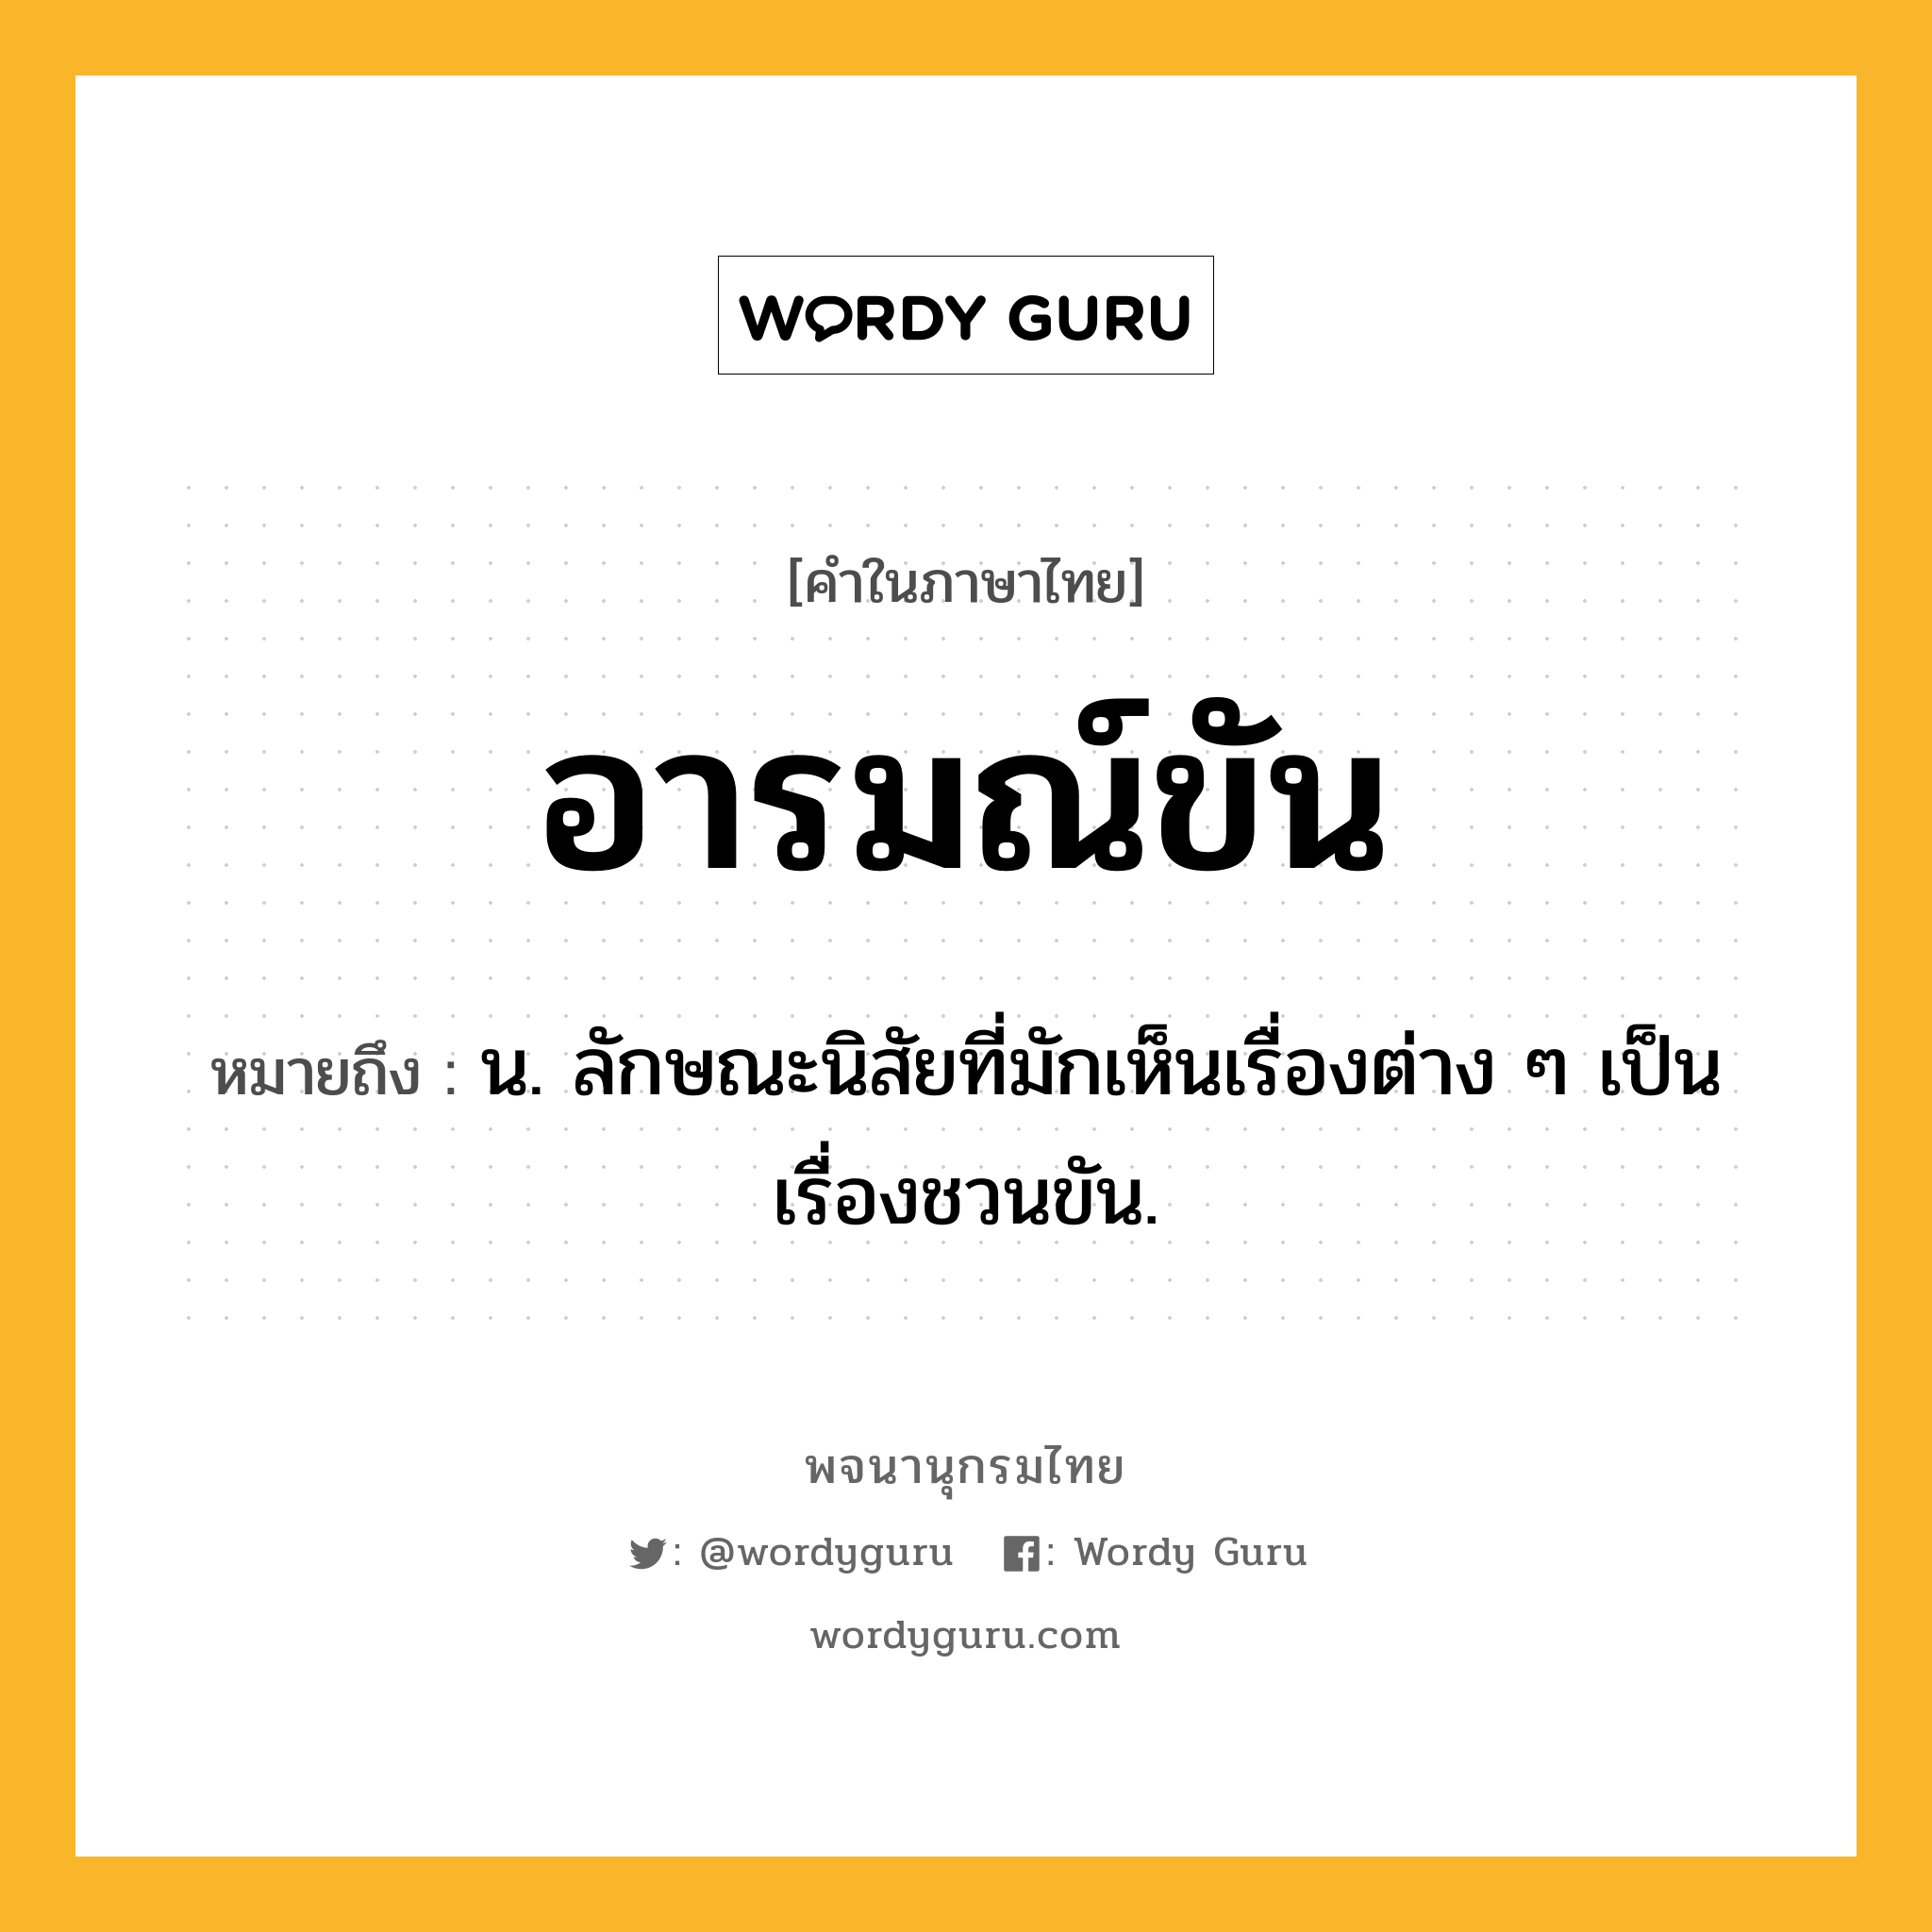 อารมณ์ขัน หมายถึงอะไร?, คำในภาษาไทย อารมณ์ขัน หมายถึง น. ลักษณะนิสัยที่มักเห็นเรื่องต่าง ๆ เป็นเรื่องชวนขัน.